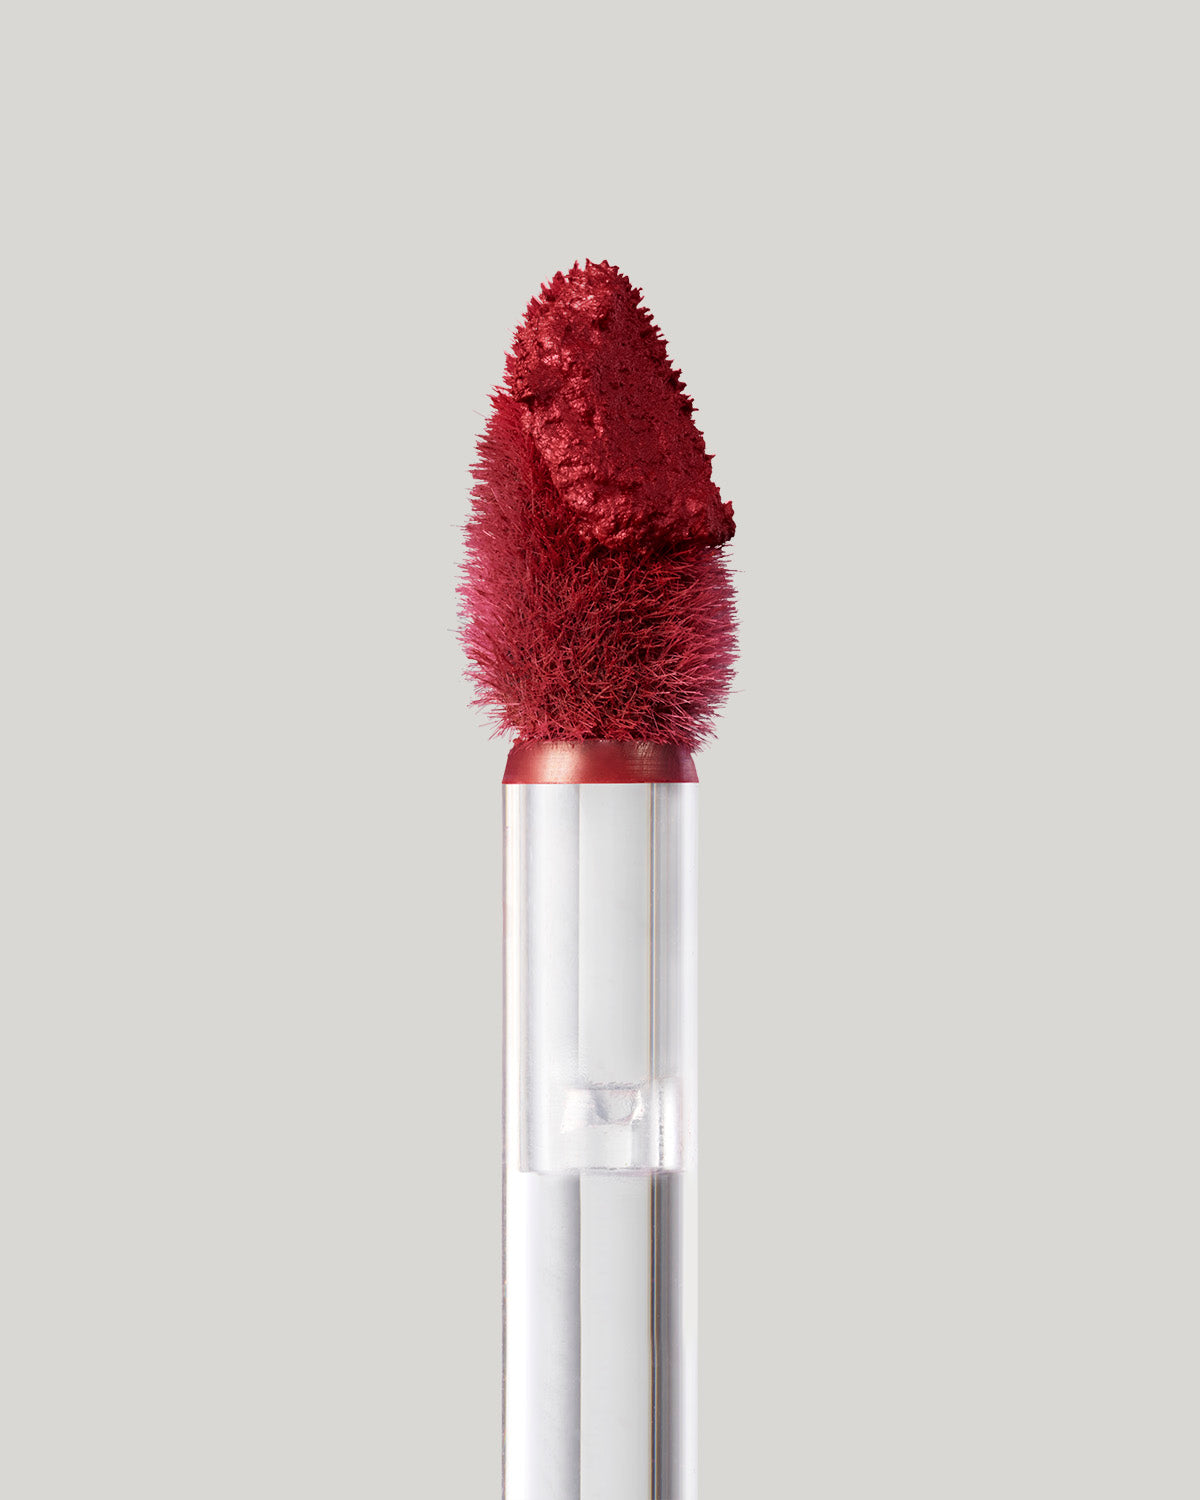 Fenty Icon Velvet Liquid Lipstick — The MVP